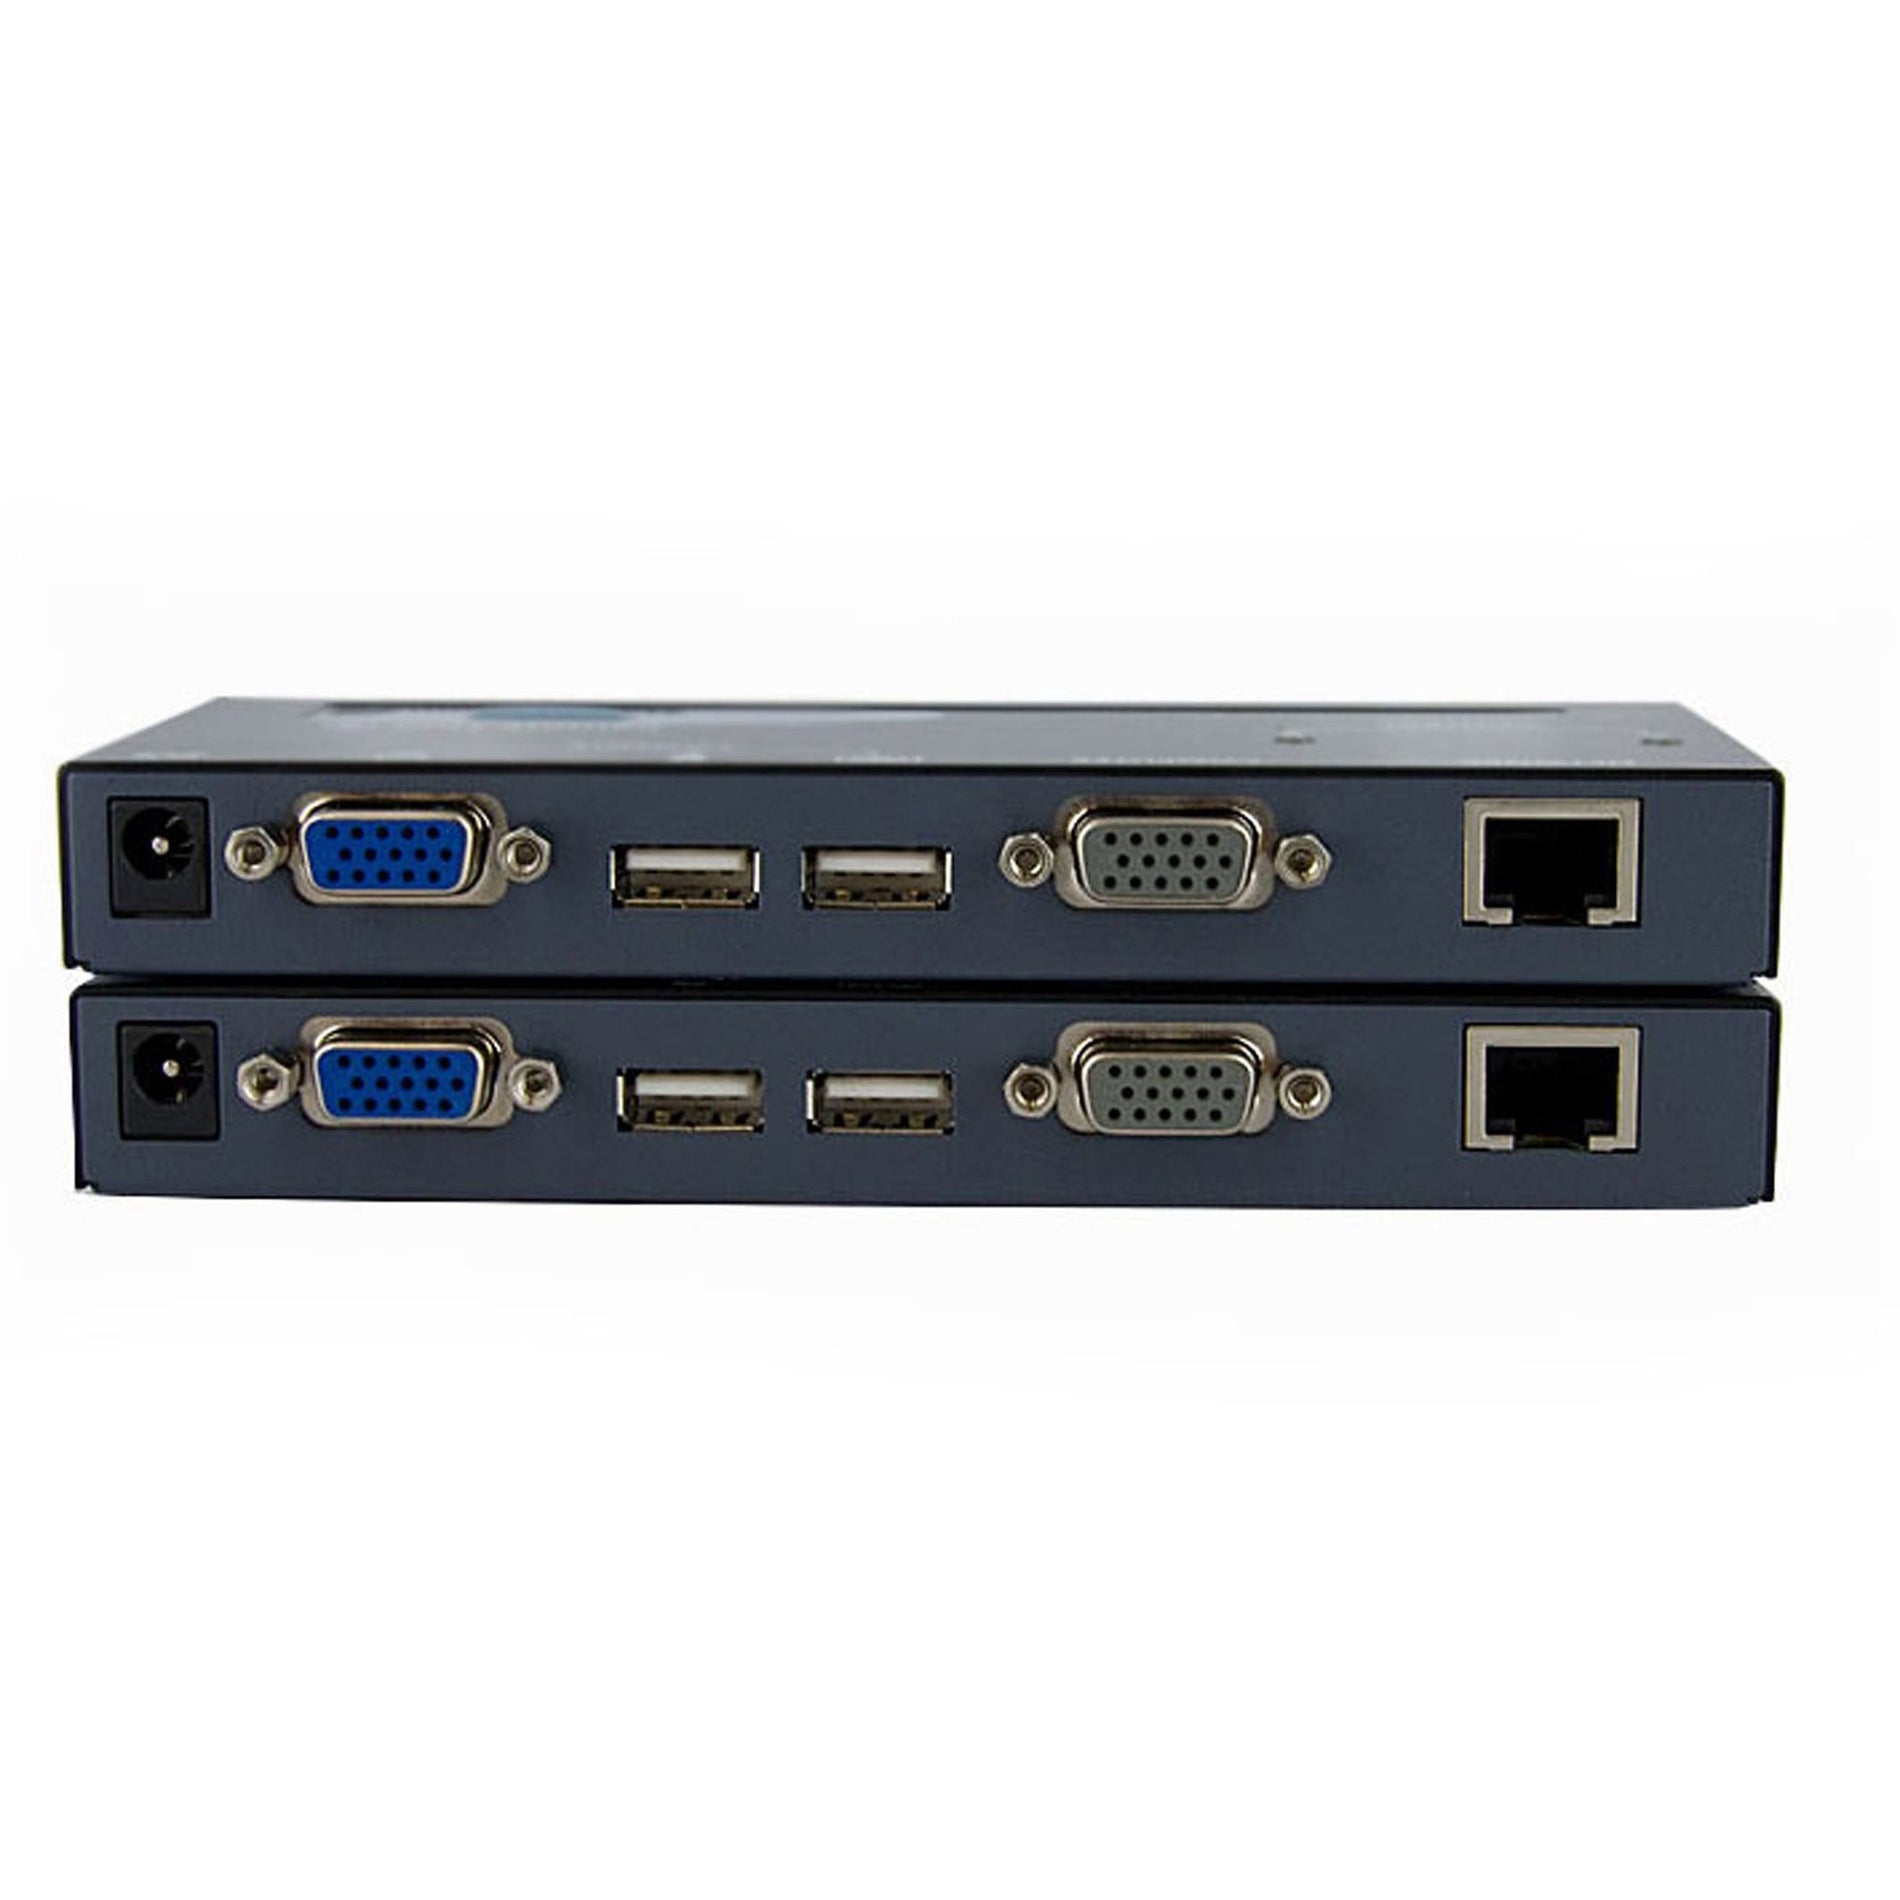 スターテック・ドットコム SV565UTPU USB VGA KVMコンソールエクステンダーCAT5 UTP-500フィート、USBおよびVGA信号を500フィートまで延長します 品名：スターテック・ドットコム